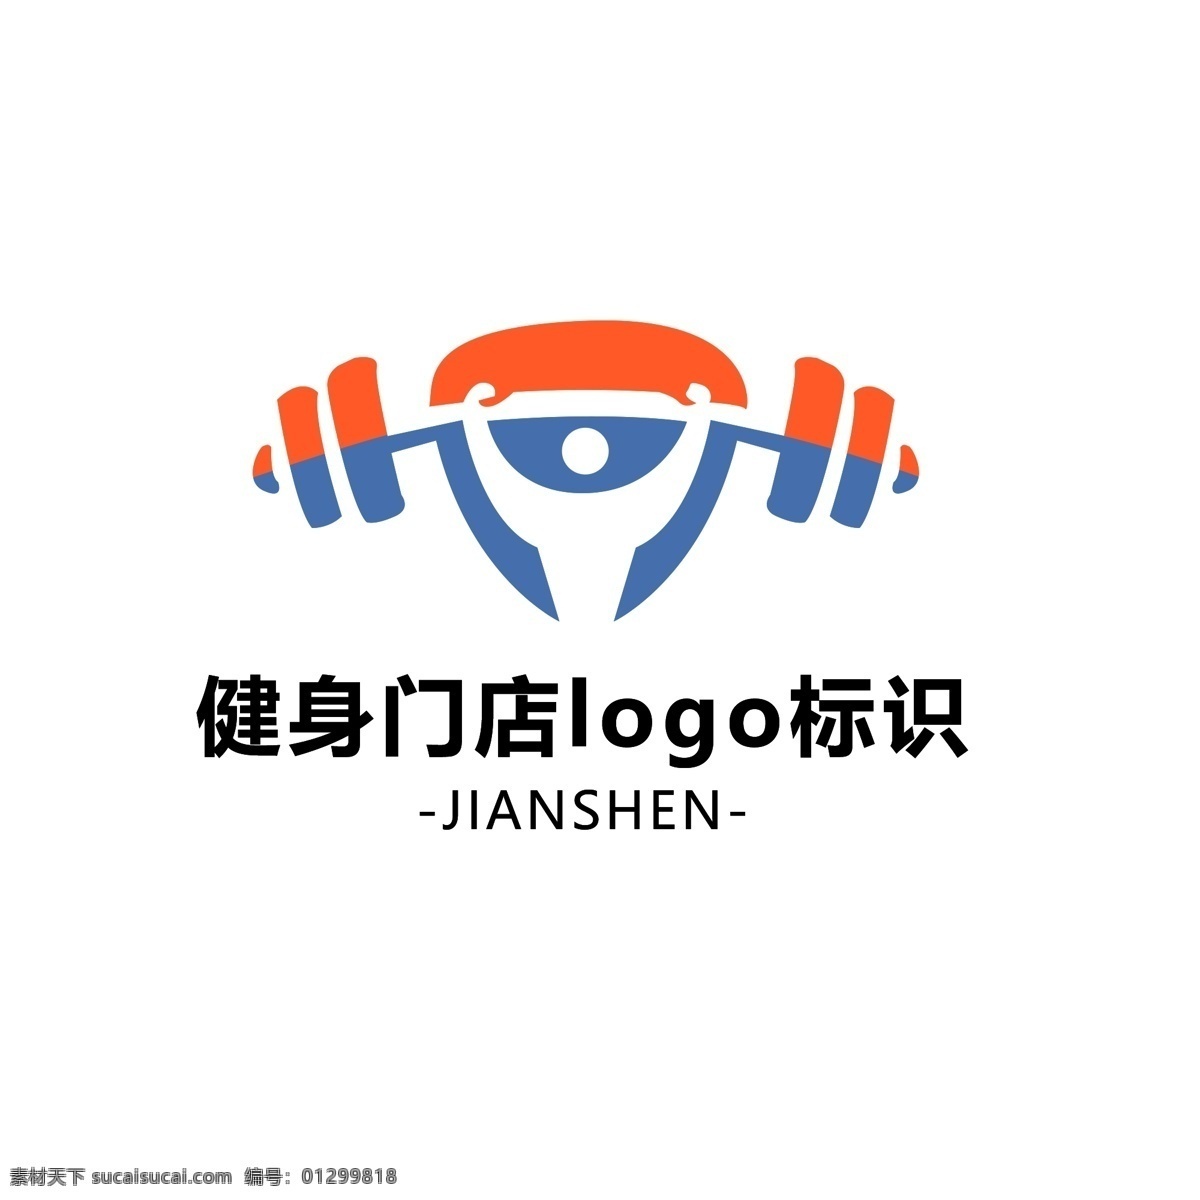 健身房 logo 标志 简约 健身 举重 门店标识